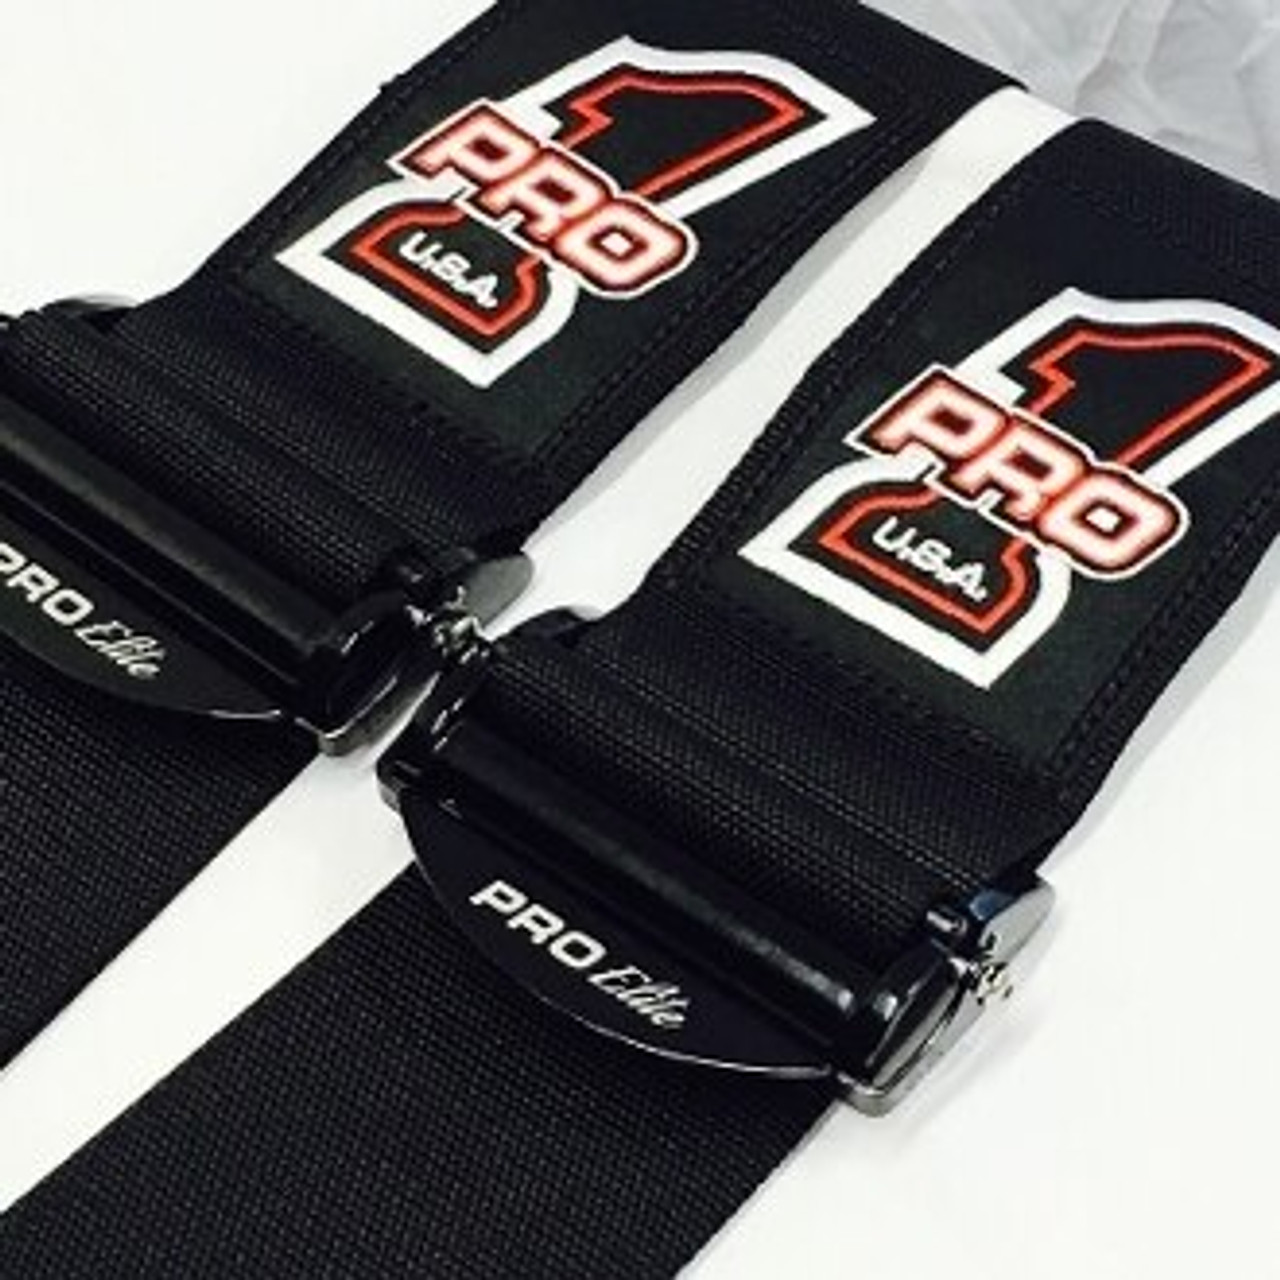 Pro Elite Cam Lock HANS Compatible Seat Belts - 5pt Black